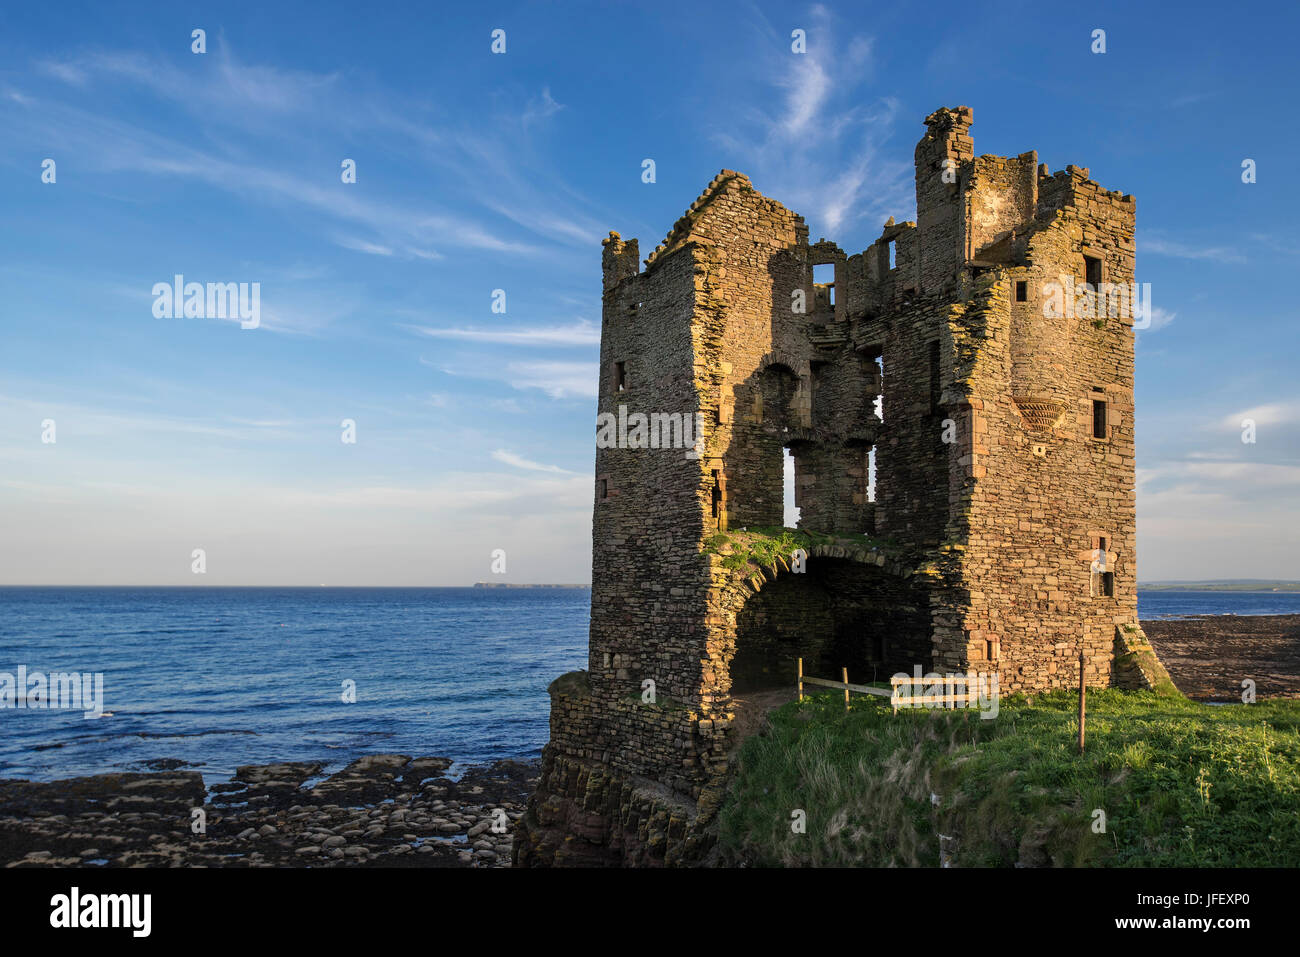 Château surplombant la baie de Keiss Sinclairs, Caithness, Ecosse, Royaume-Uni Banque D'Images